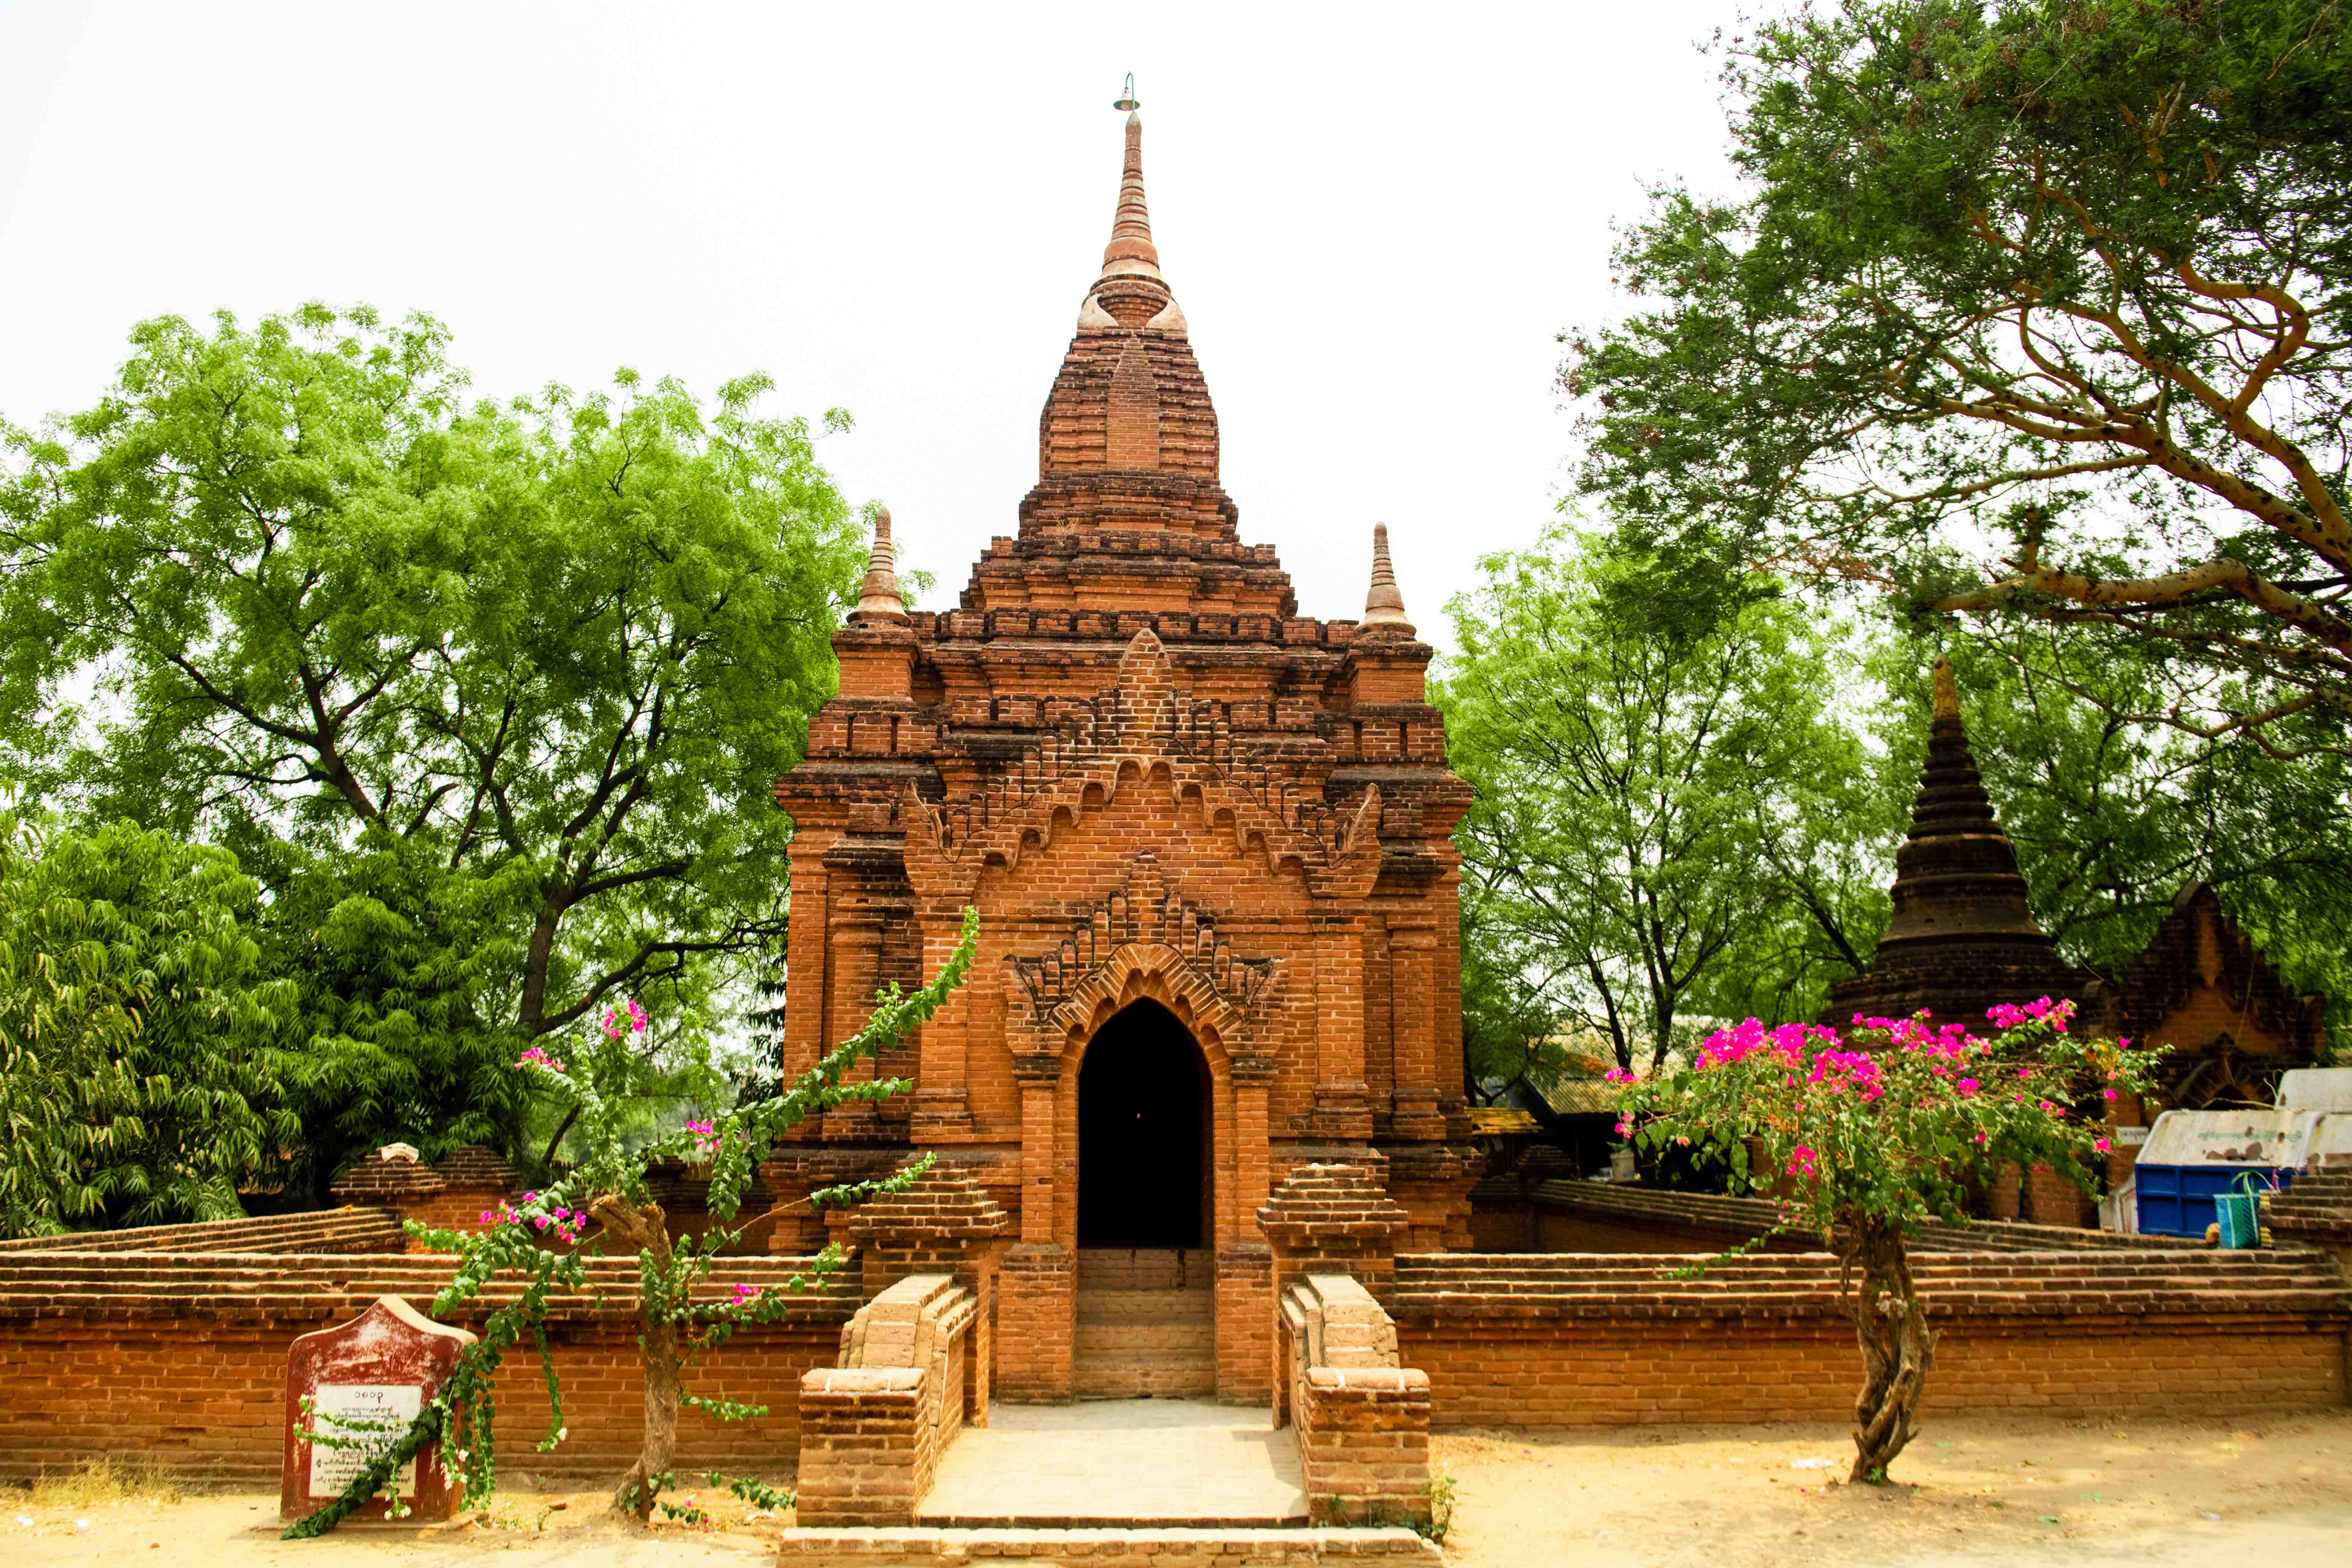 原创缅甸最年轻的寺庙之一,佛头用纯金打造,是万千佛塔中的高富帅!